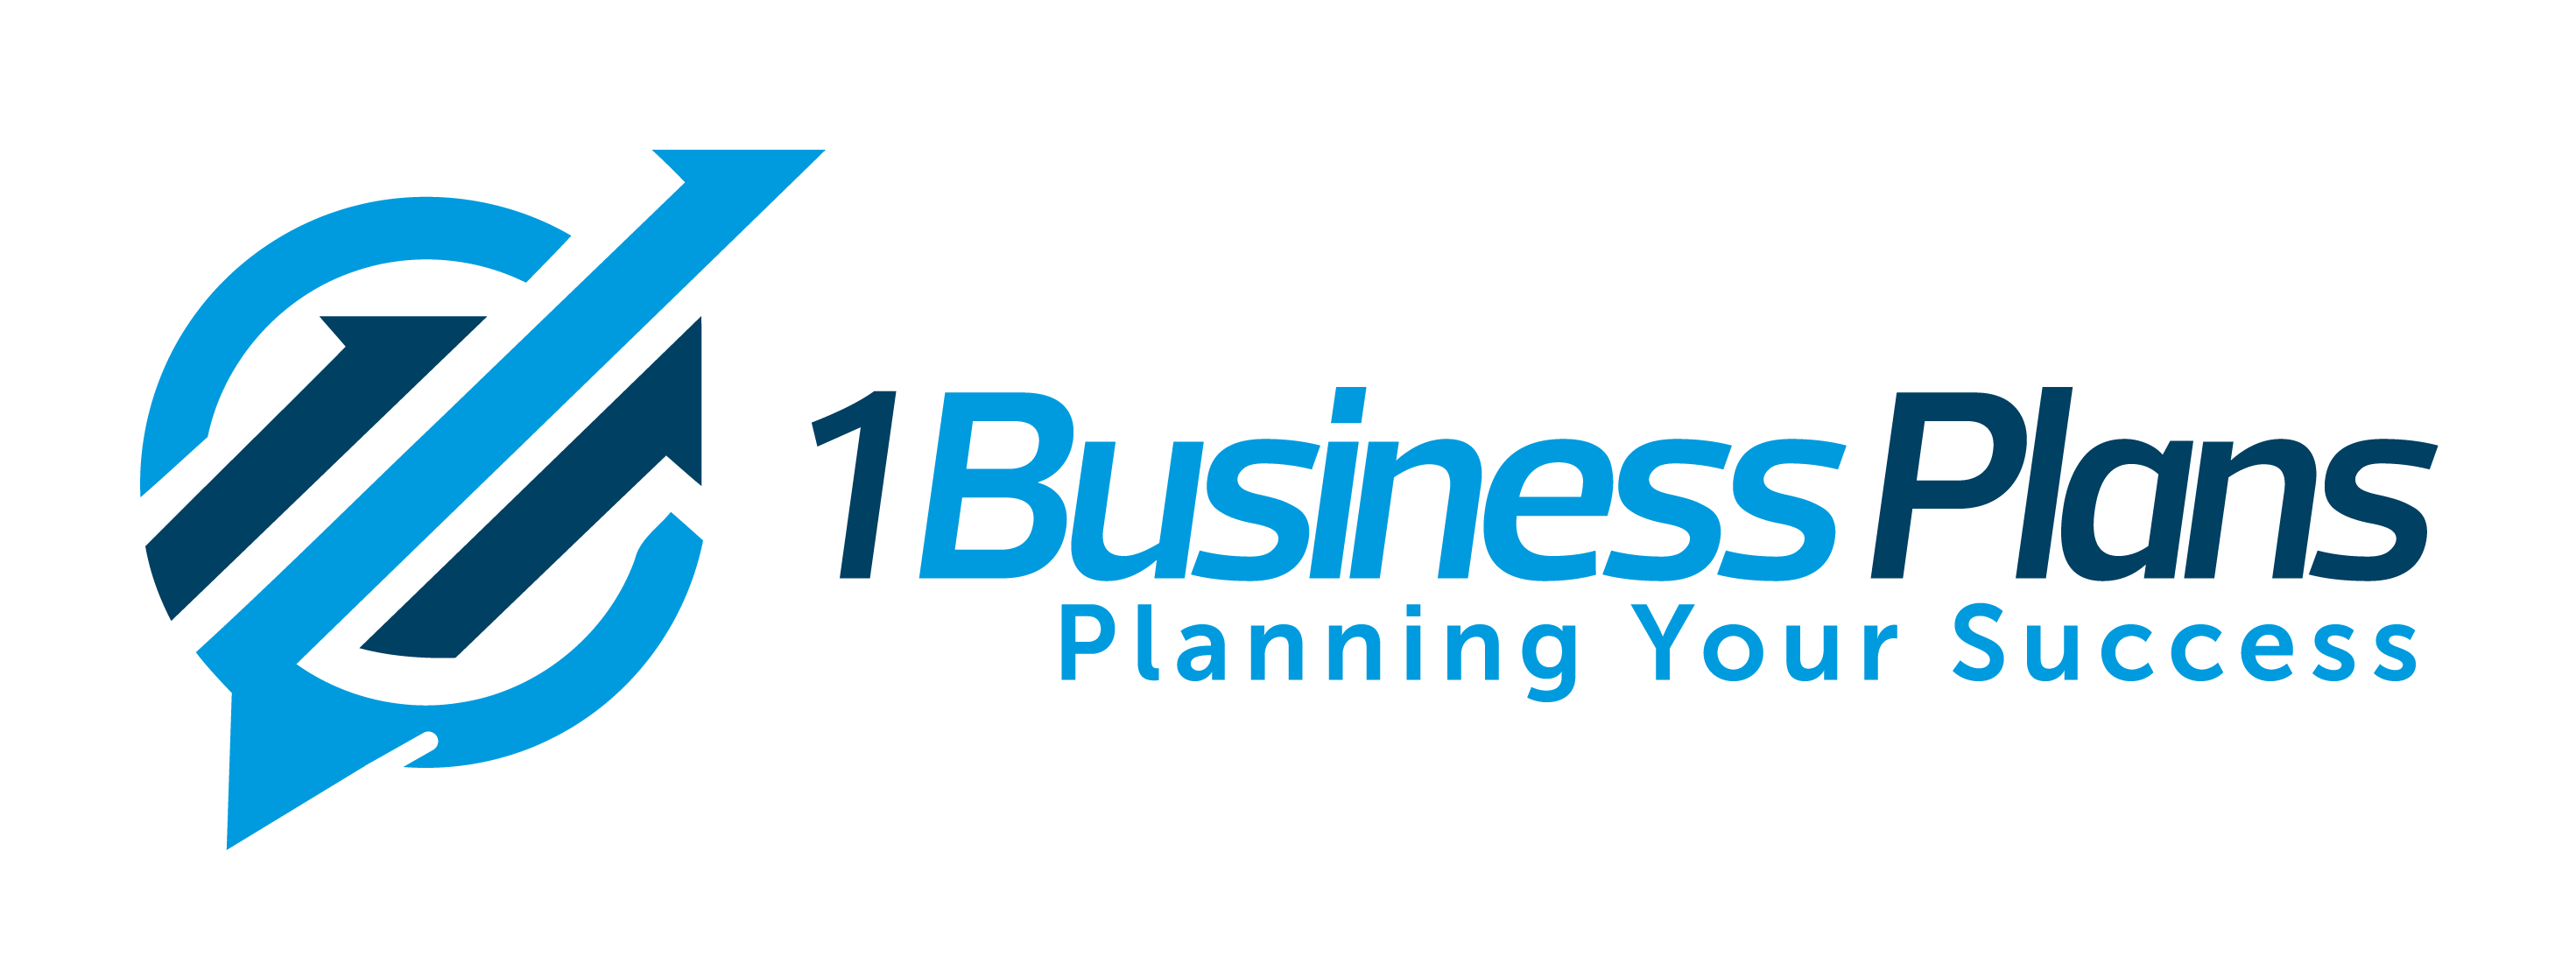 business plan logo